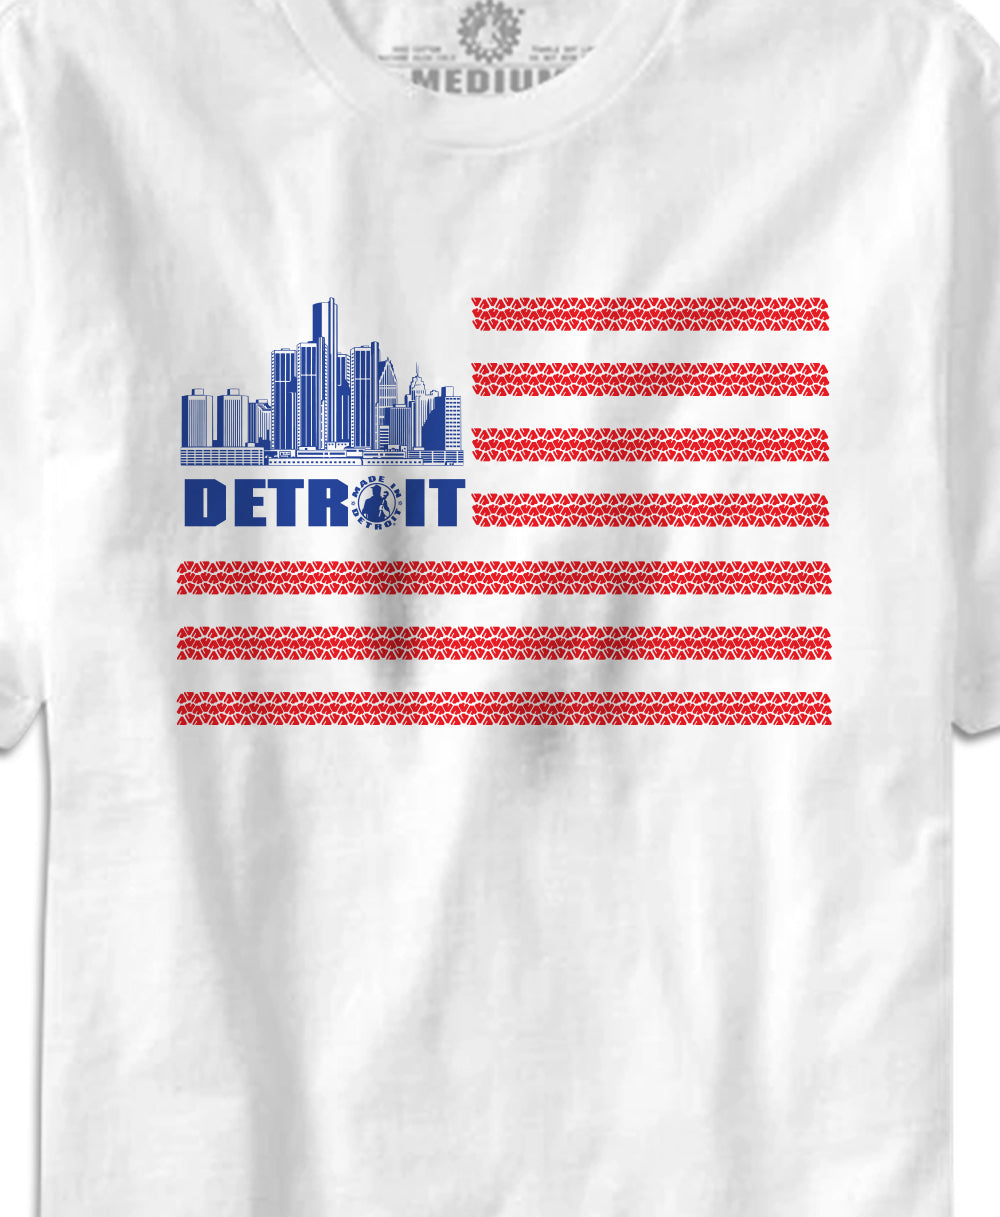 Detroit Flag Treads